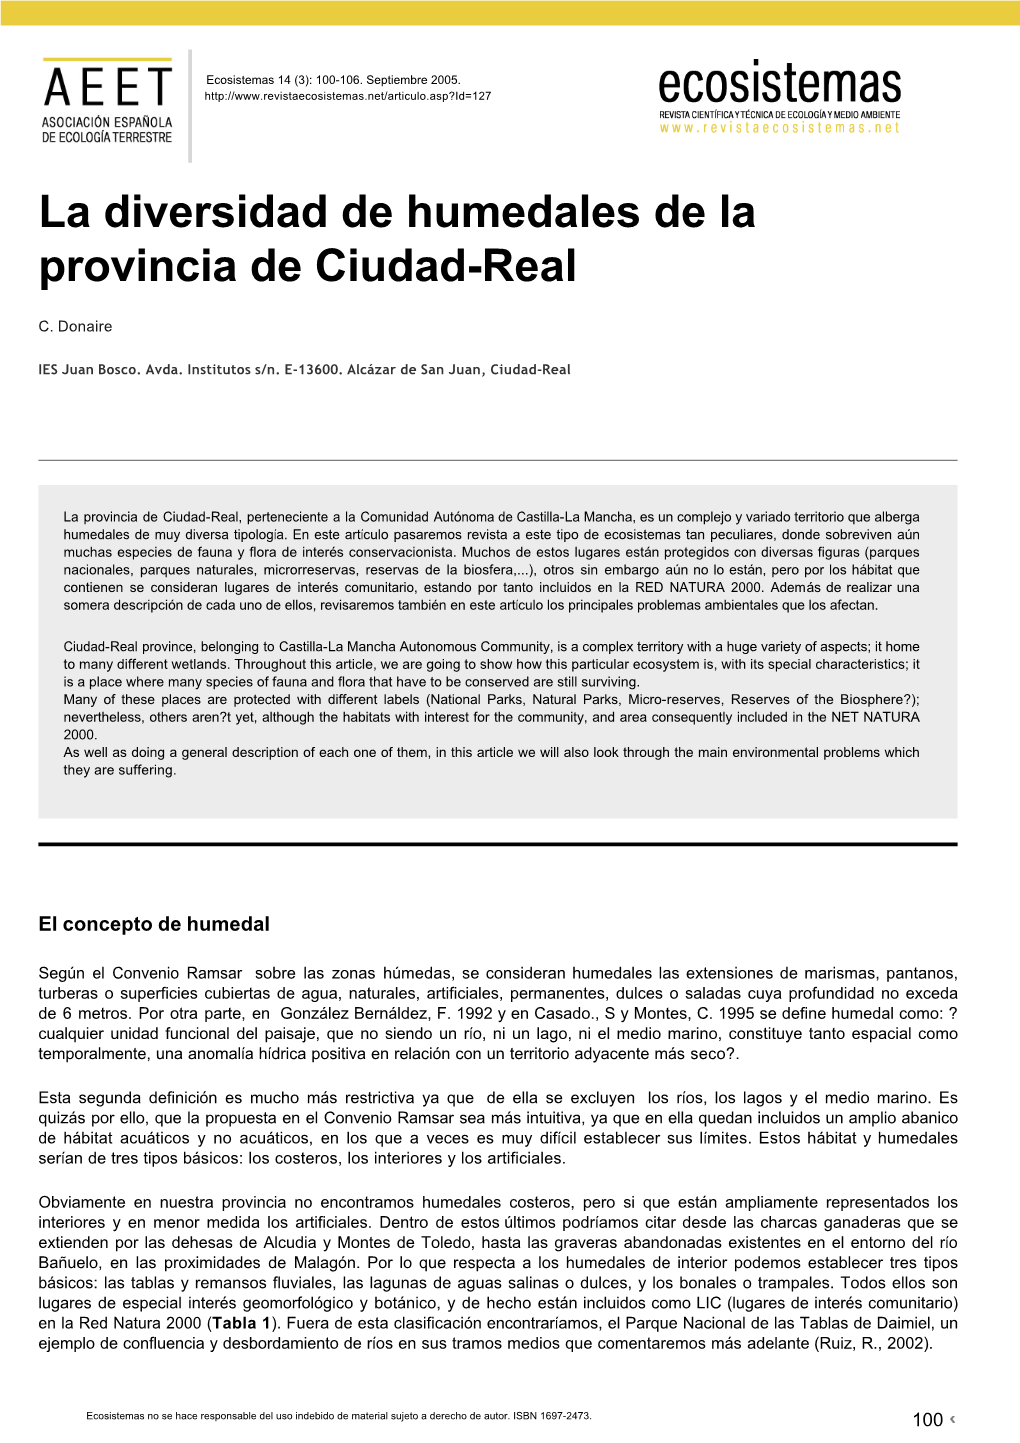 La Diversidad De Humedales De La Provincia De Ciudad-Real